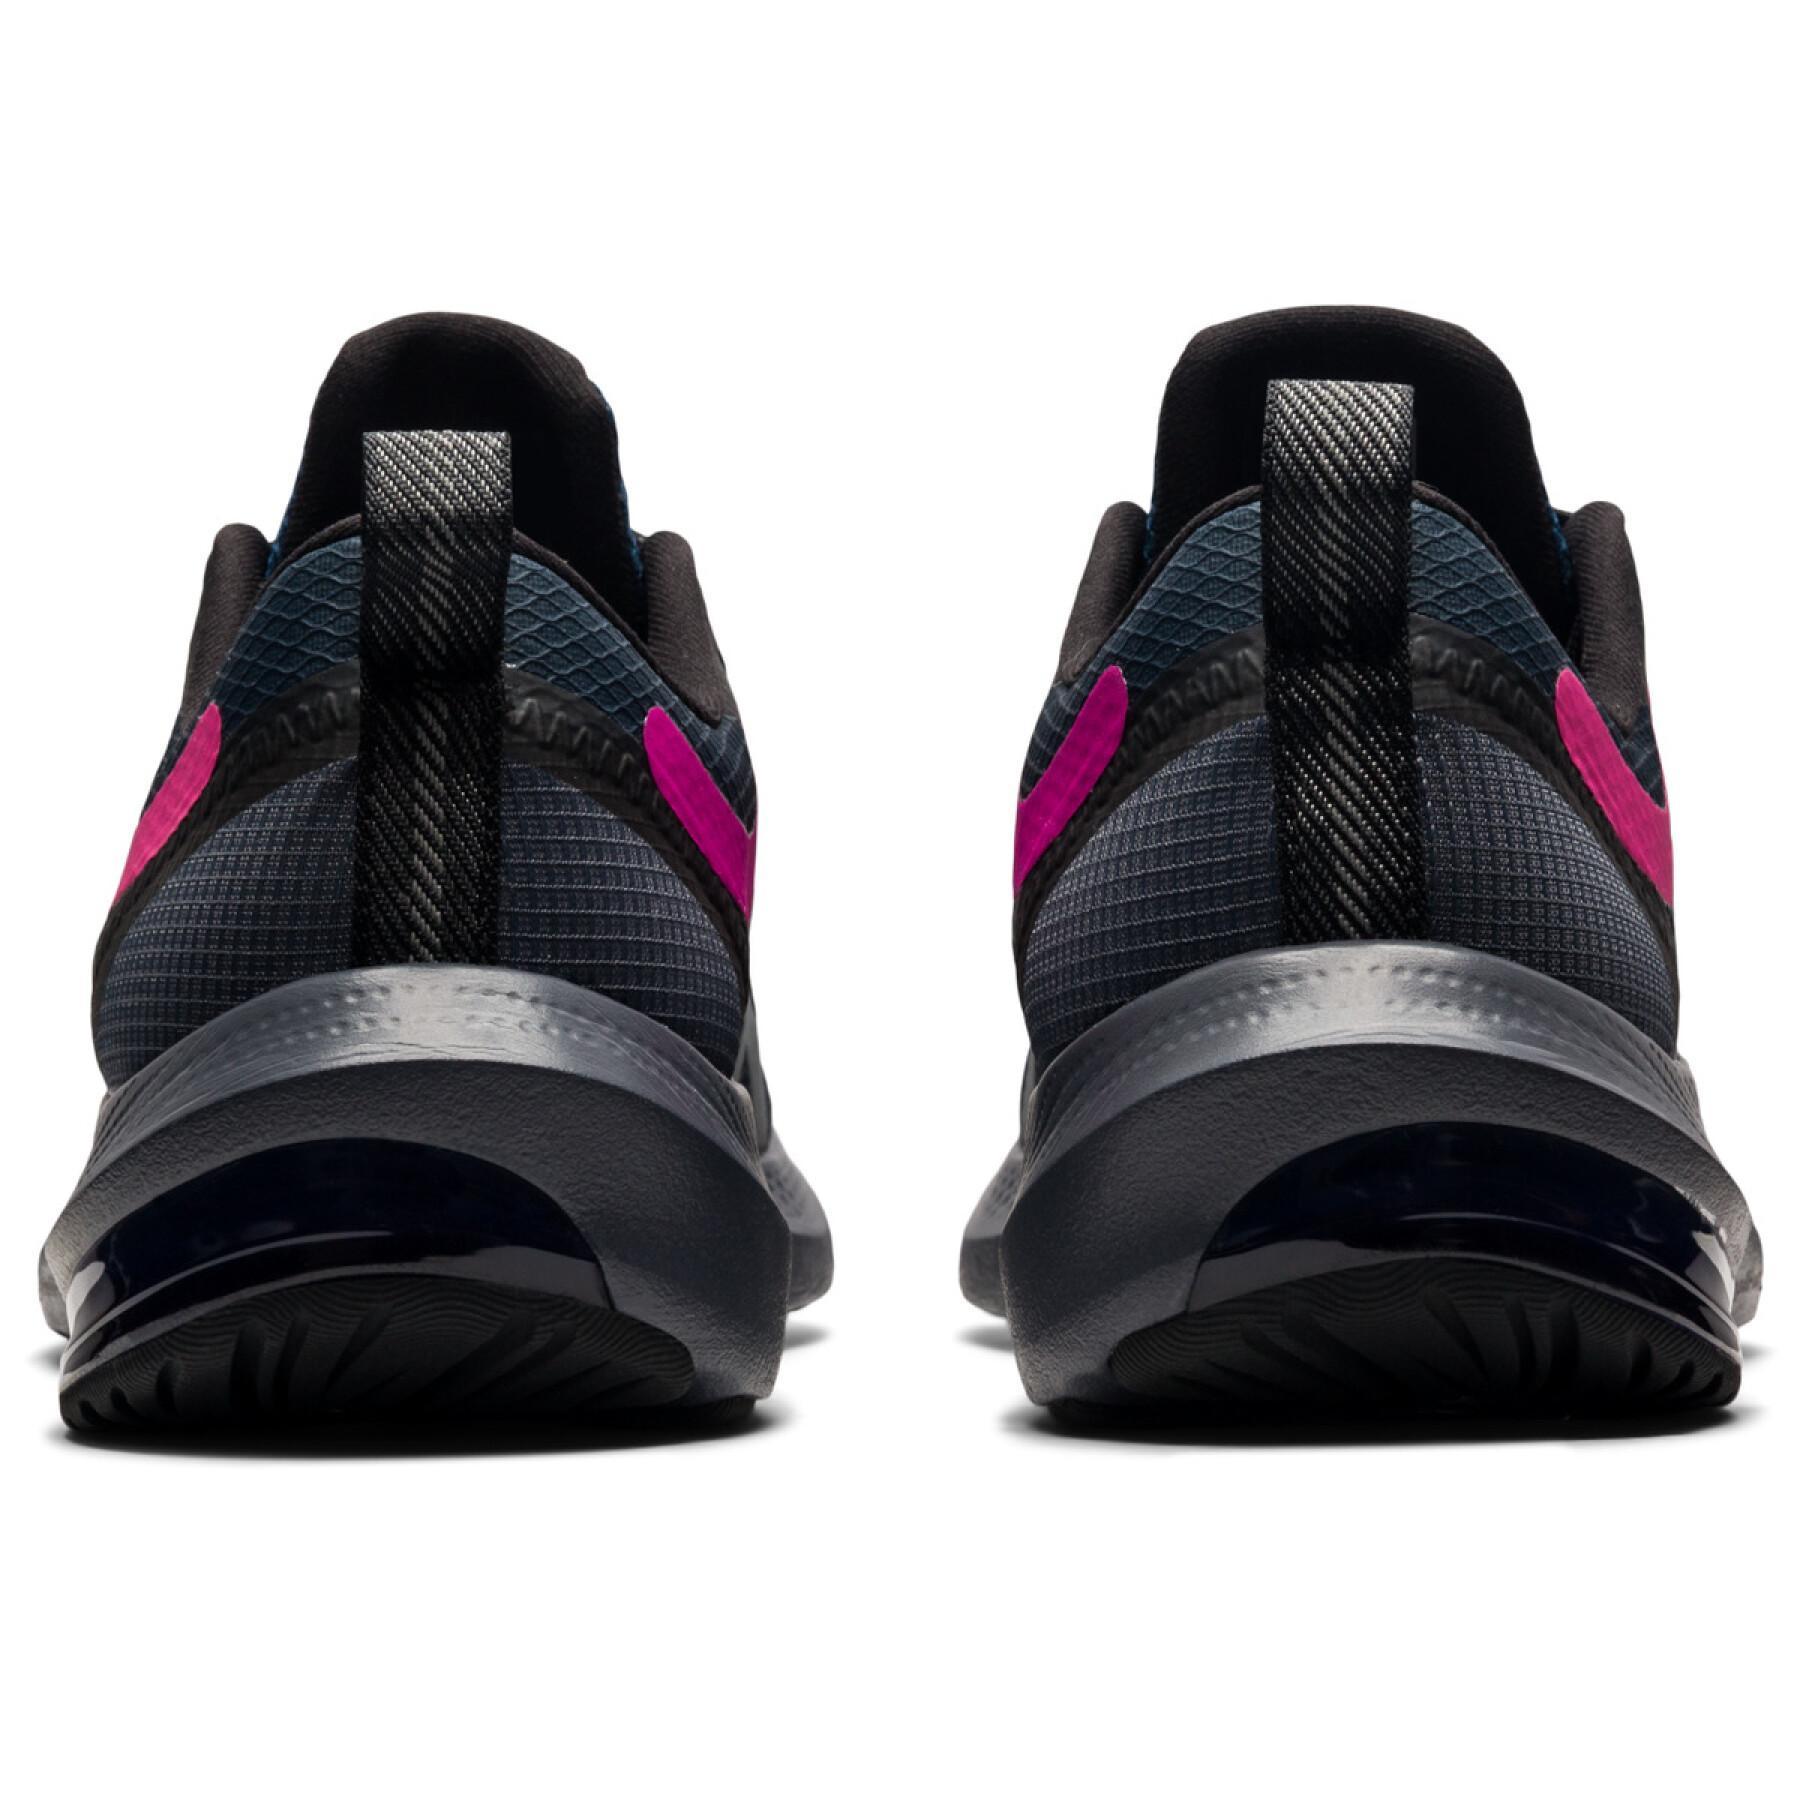 Chaussures de running femme Asics Gel-Pulse 13 Awl